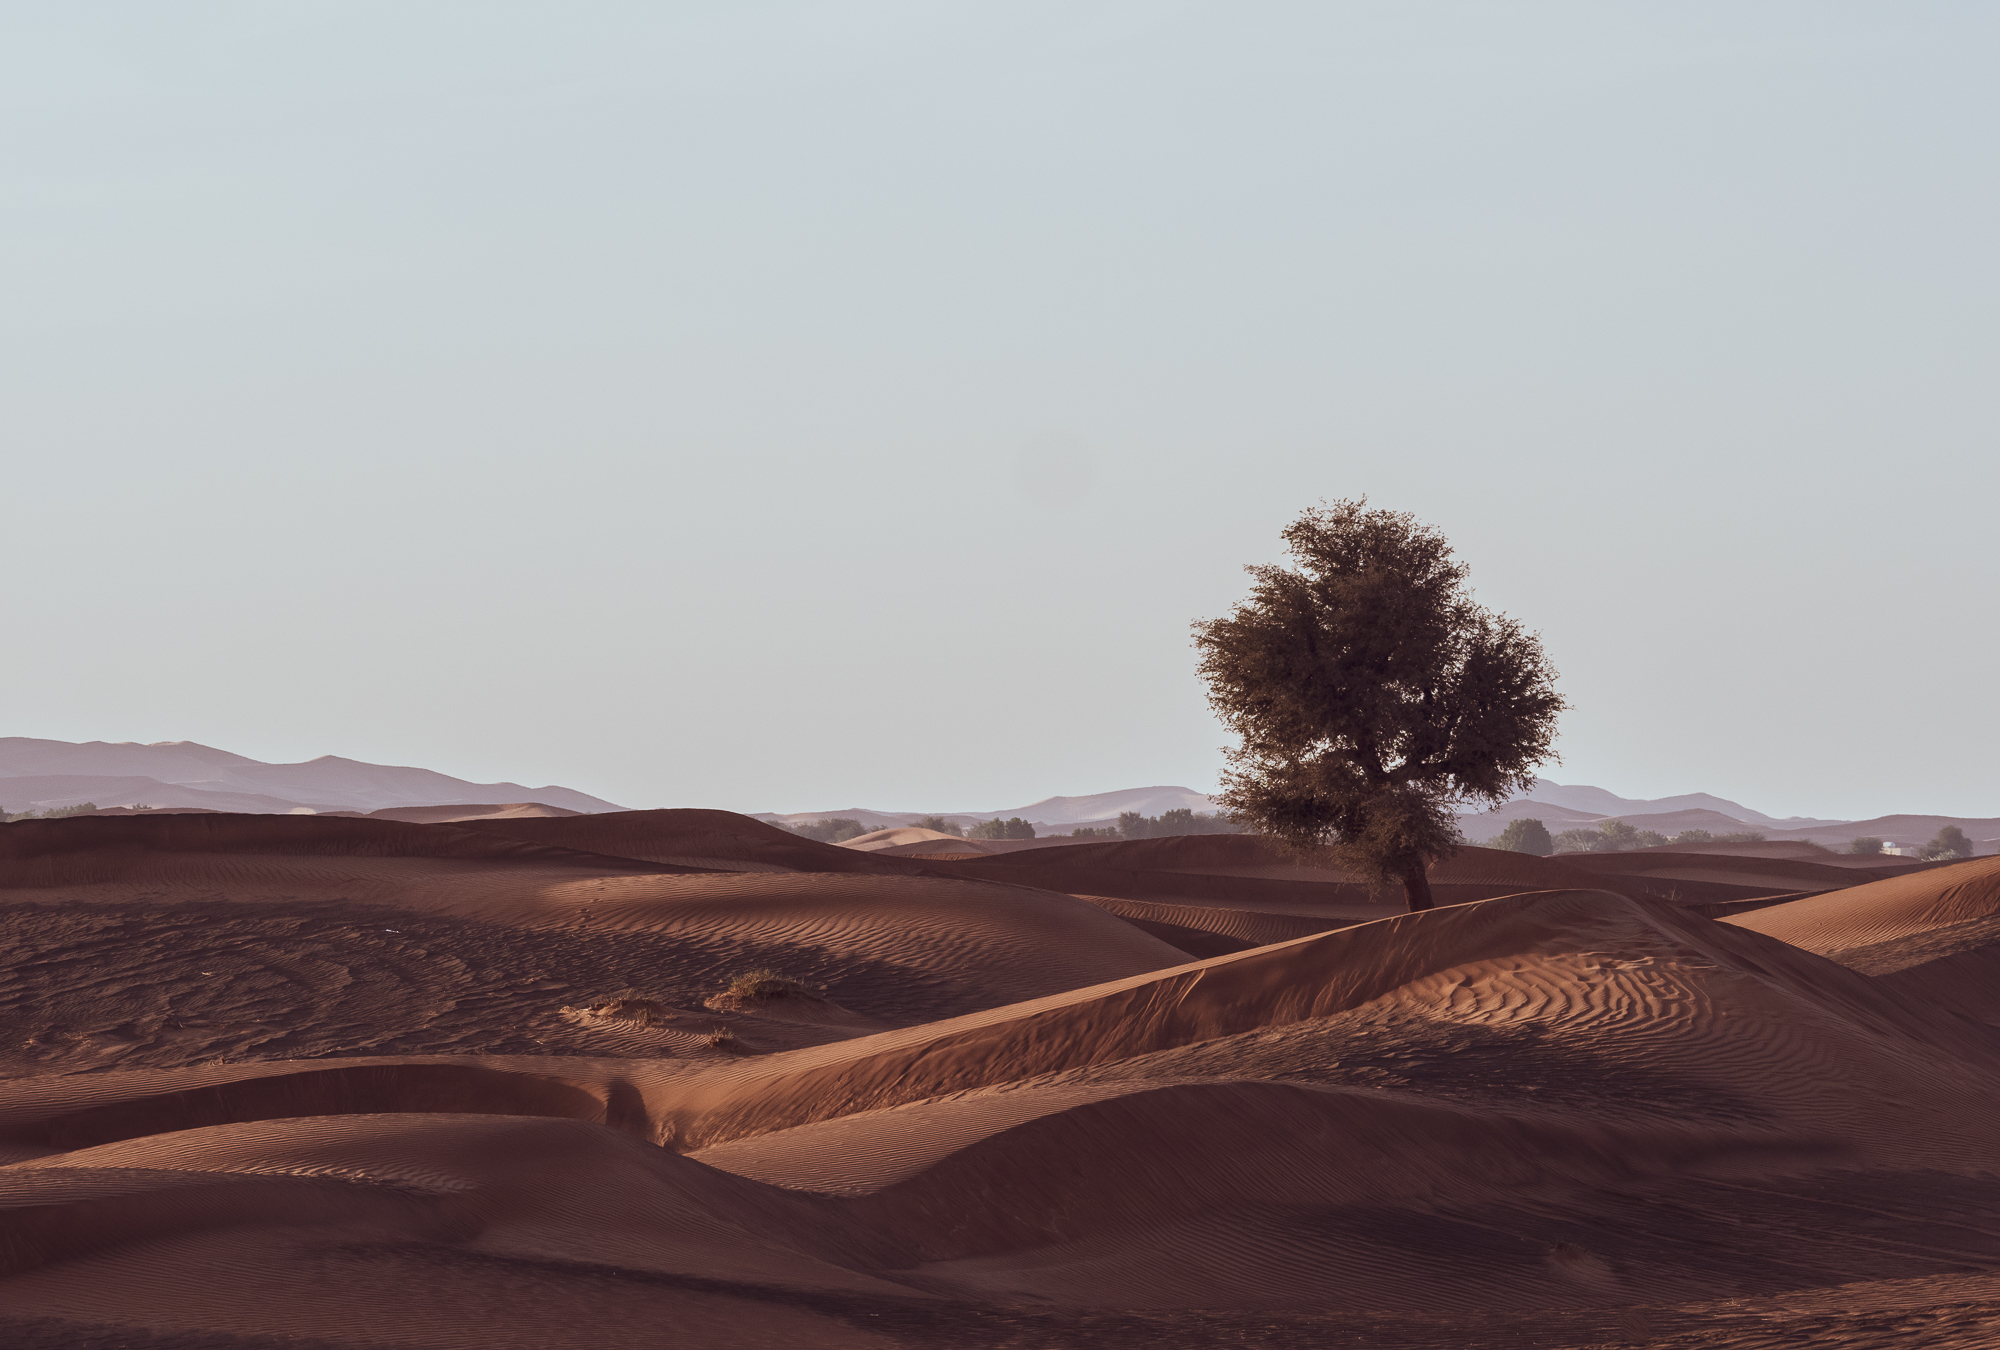 Desert Views